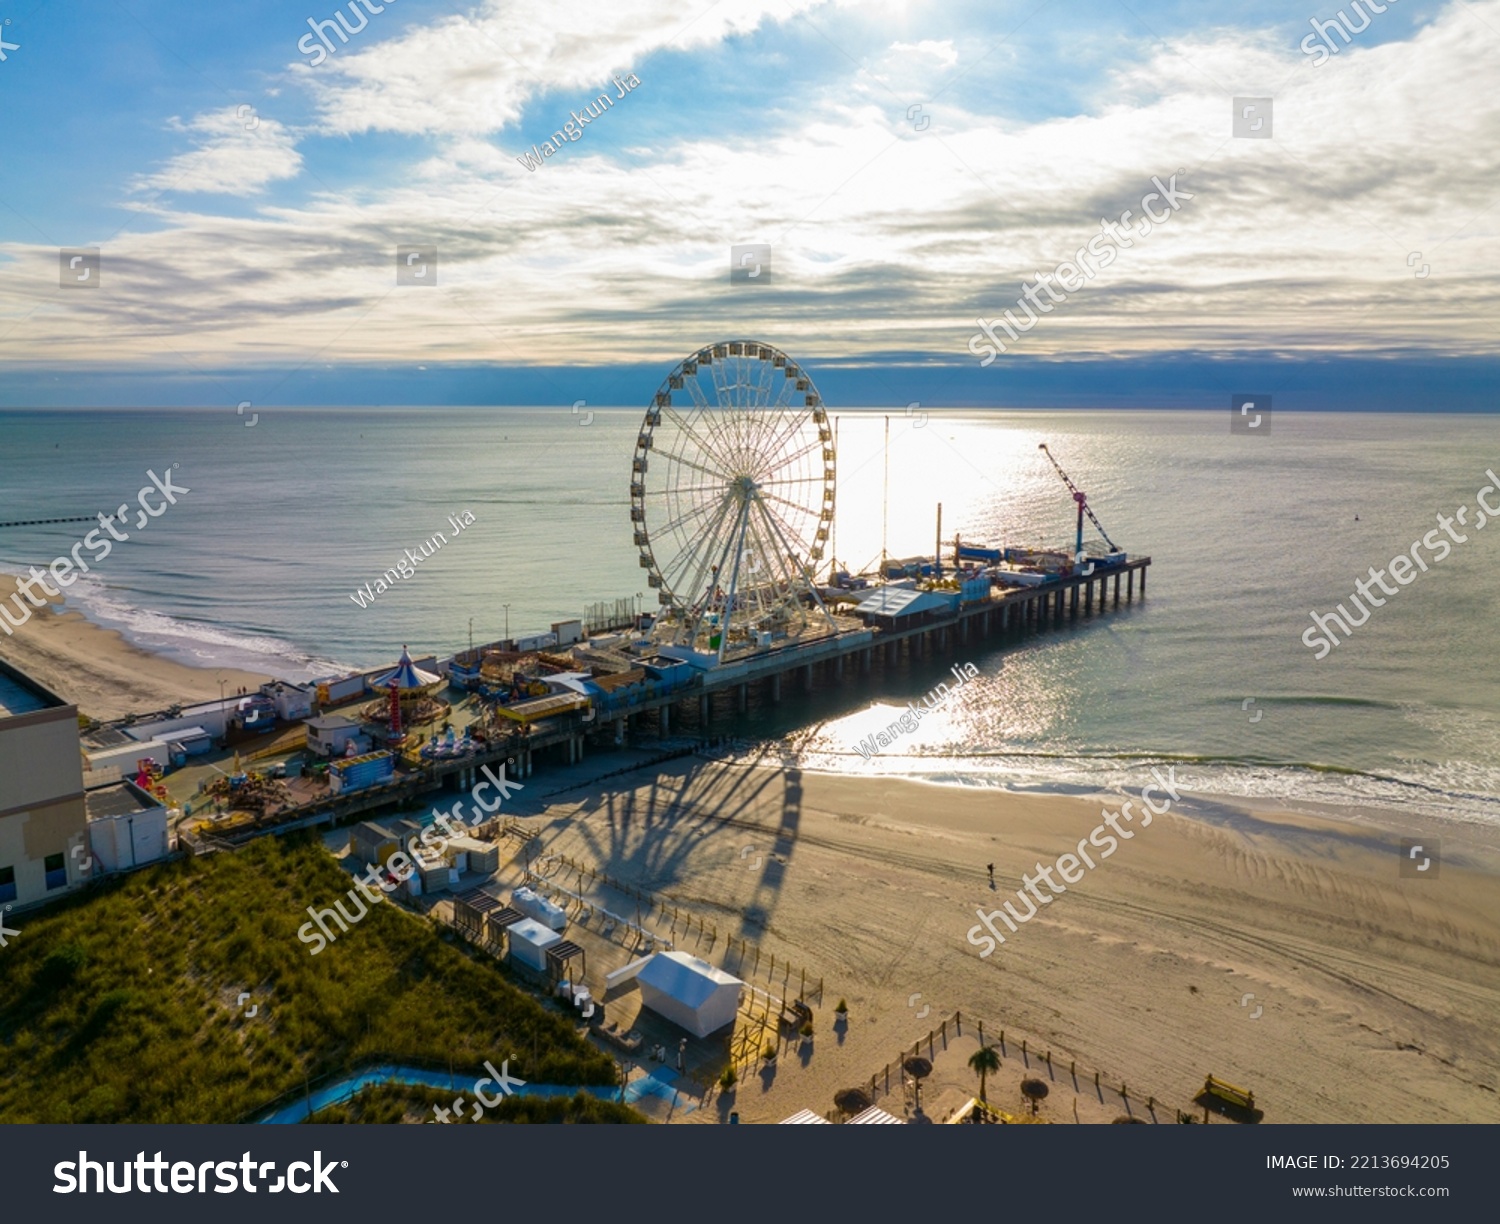 Ferris Wheel on Steel Pier next to Boardwalk in Atlantic City, New Jersey NJ, USA.  #2213694205